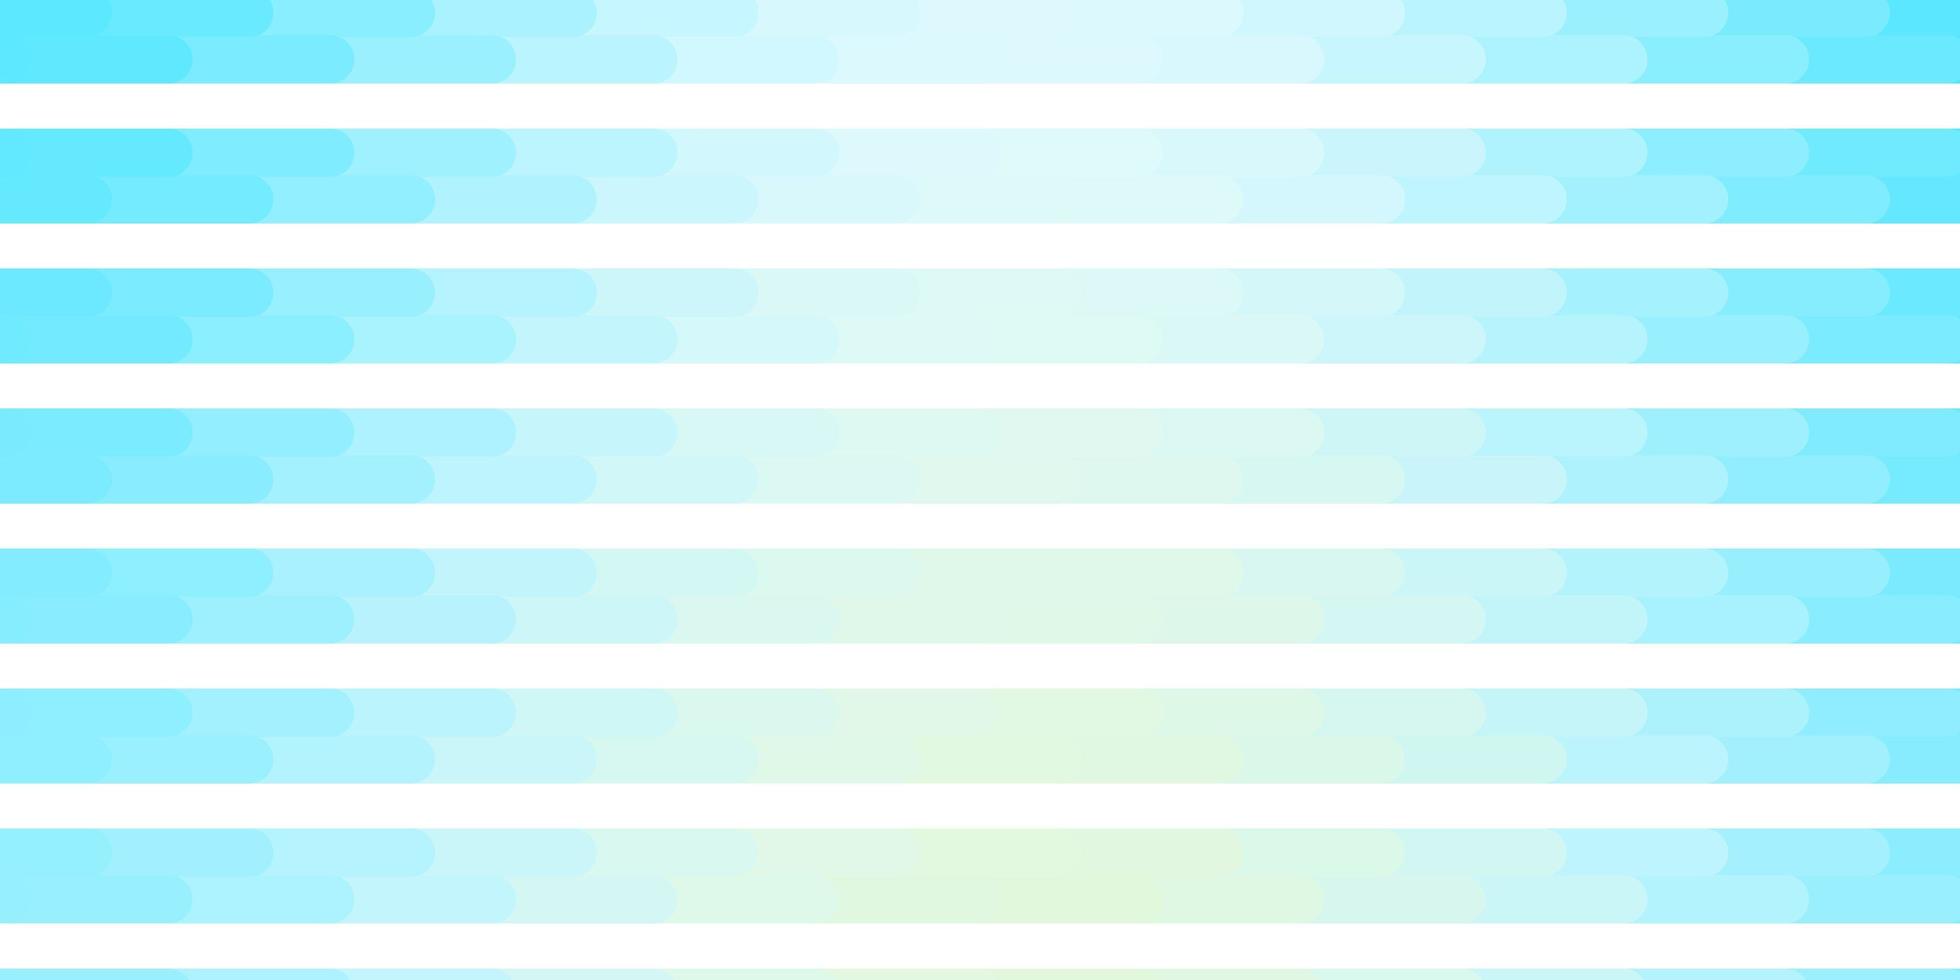 fond bleu clair avec des lignes. vecteur